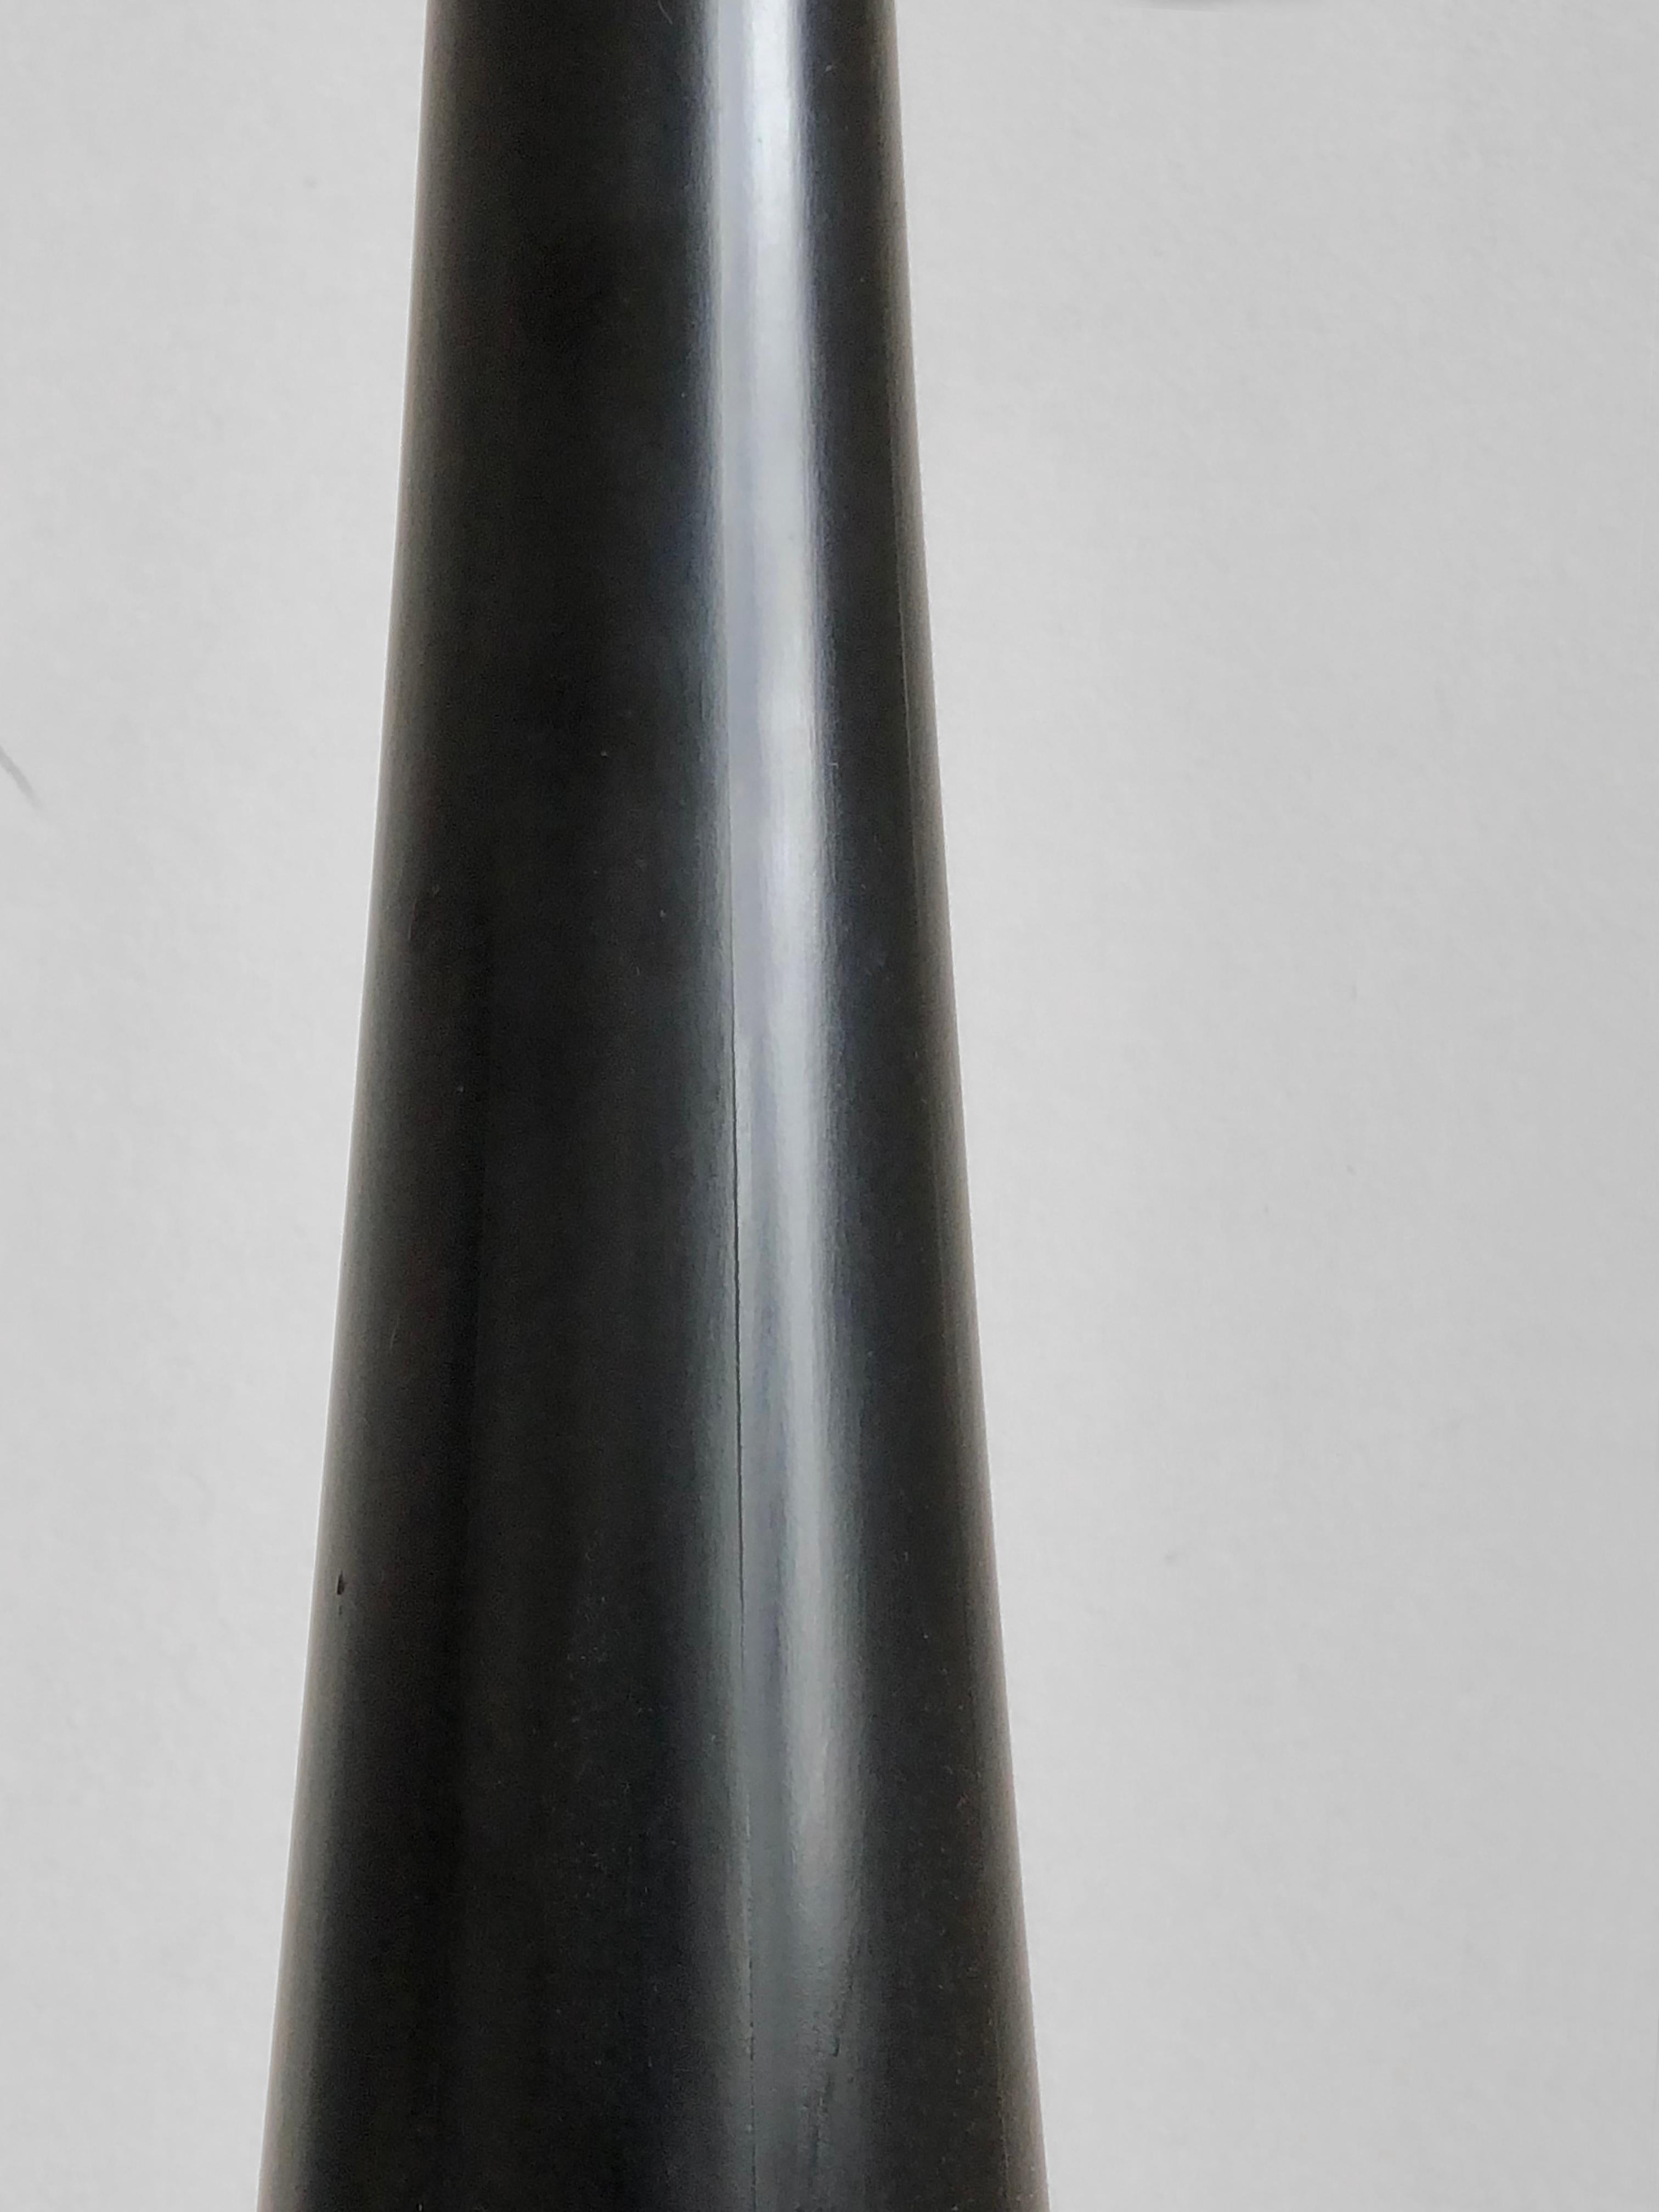 A FREE-FORM FLOOR LAMP MODEL J1 by JOSEPH-ANDRE MOTTE for DISDEROT, France 1950 For Sale 1